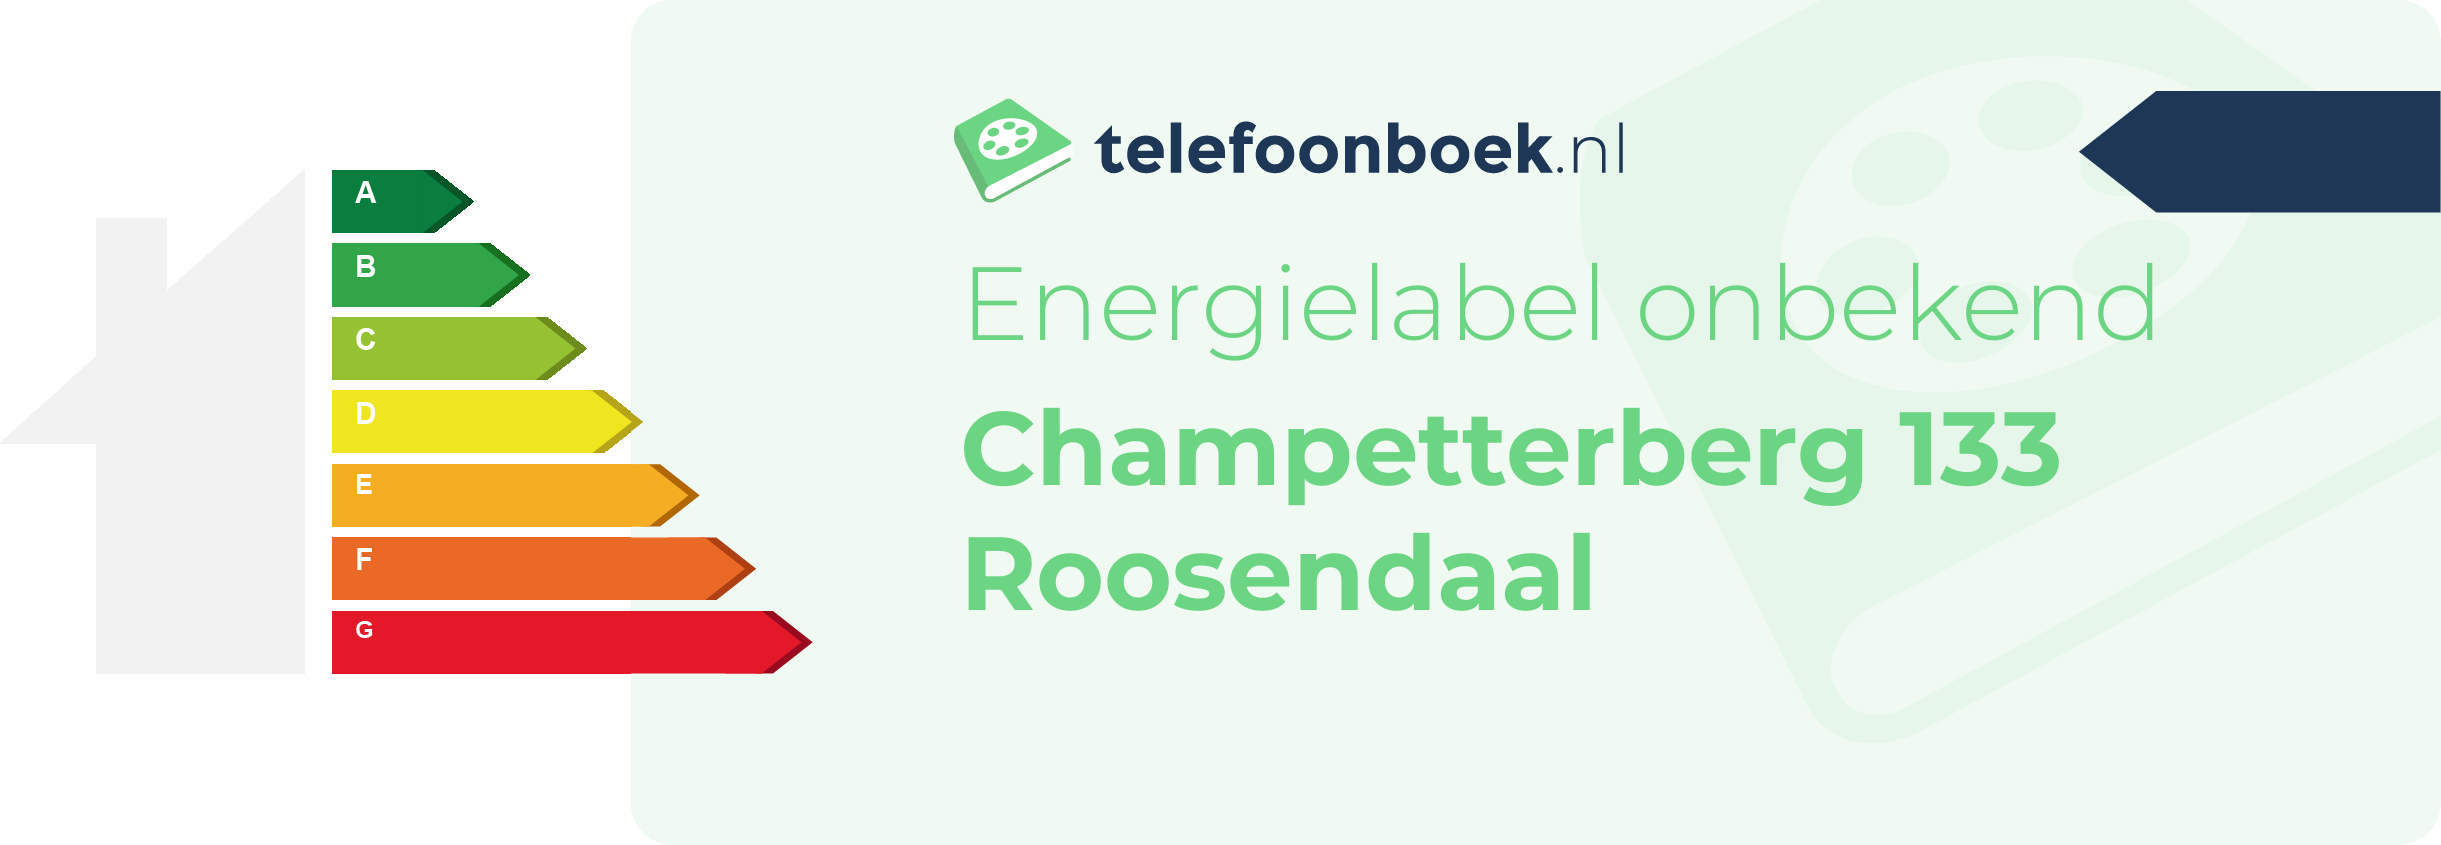 Energielabel Champetterberg 133 Roosendaal